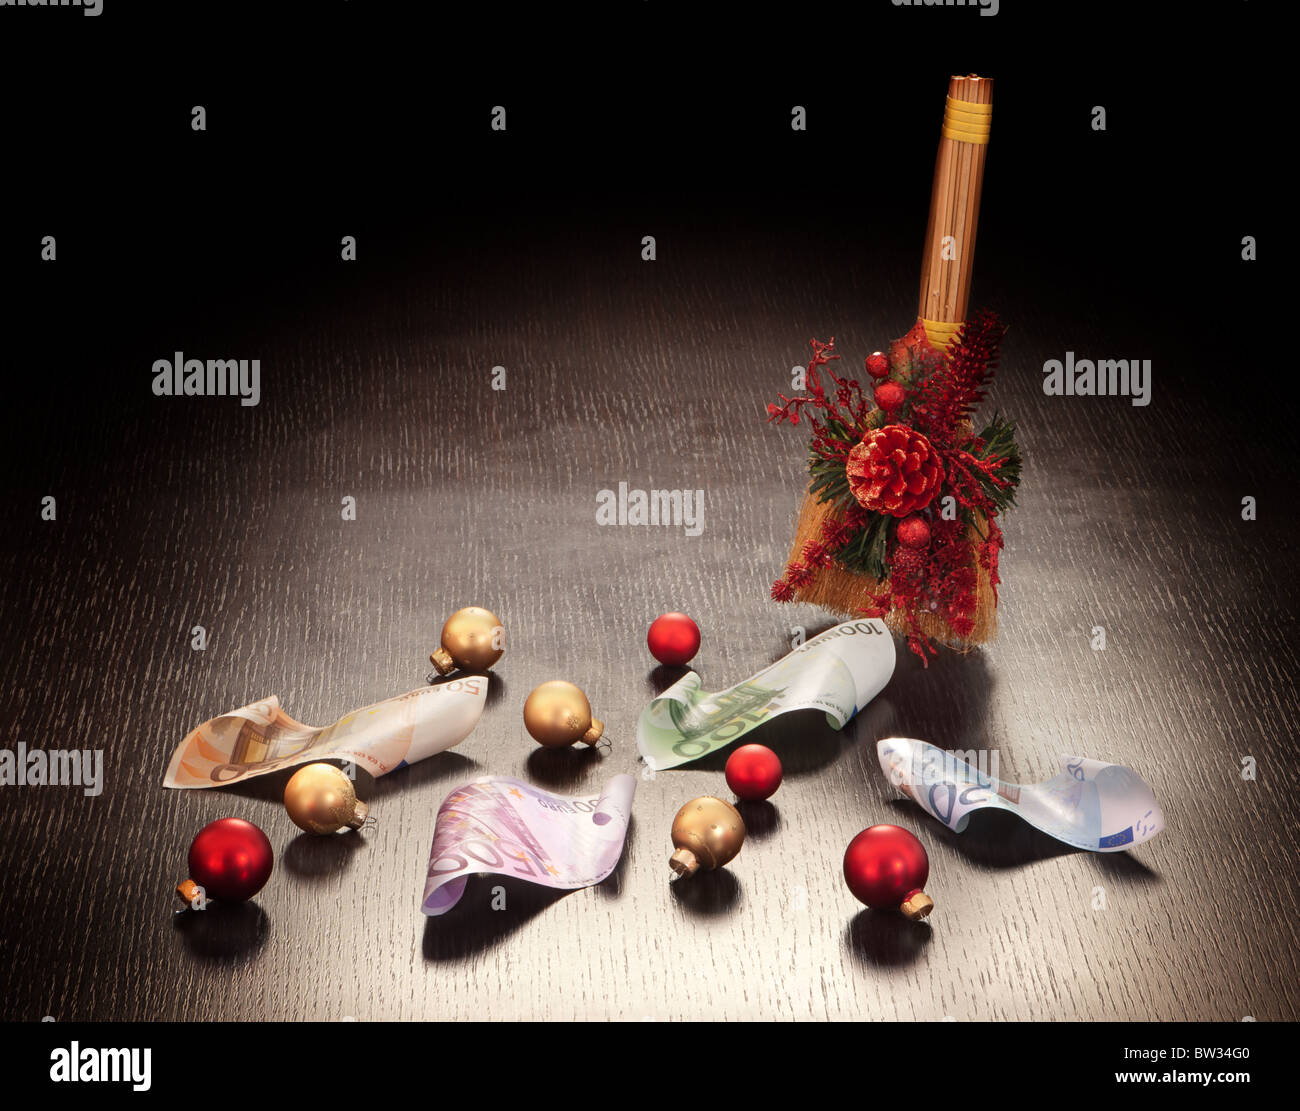 Décoration de Noël : billets balayage avec balai sur fond sombre. Stock photo. Banque D'Images